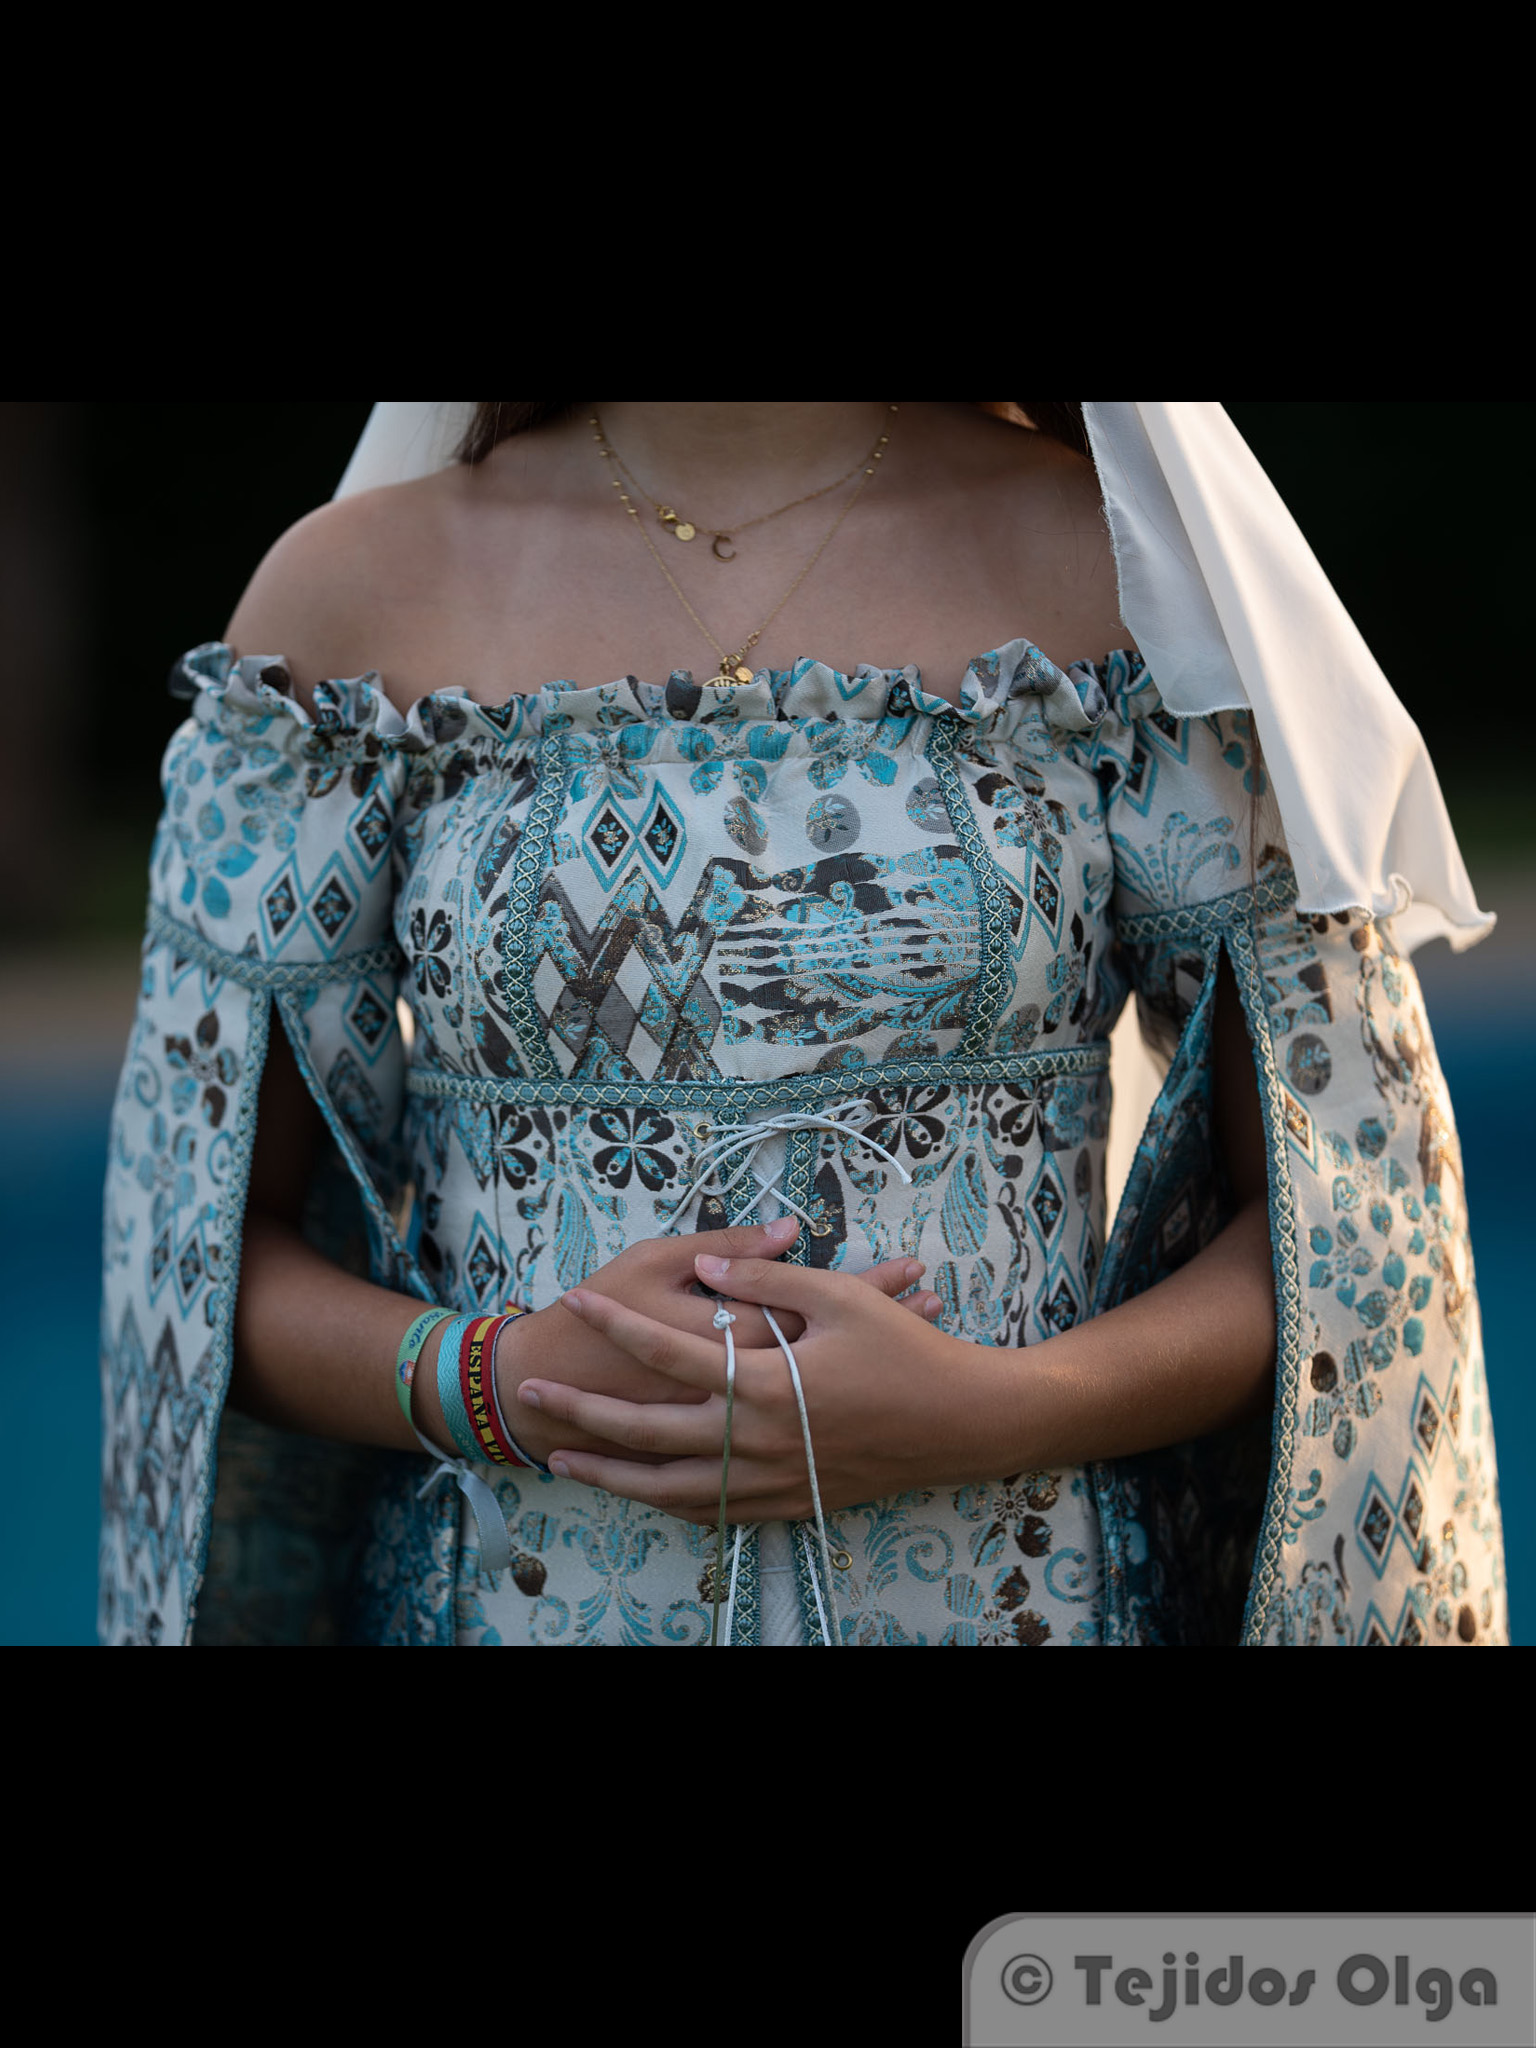 vestimenta medieval mujer